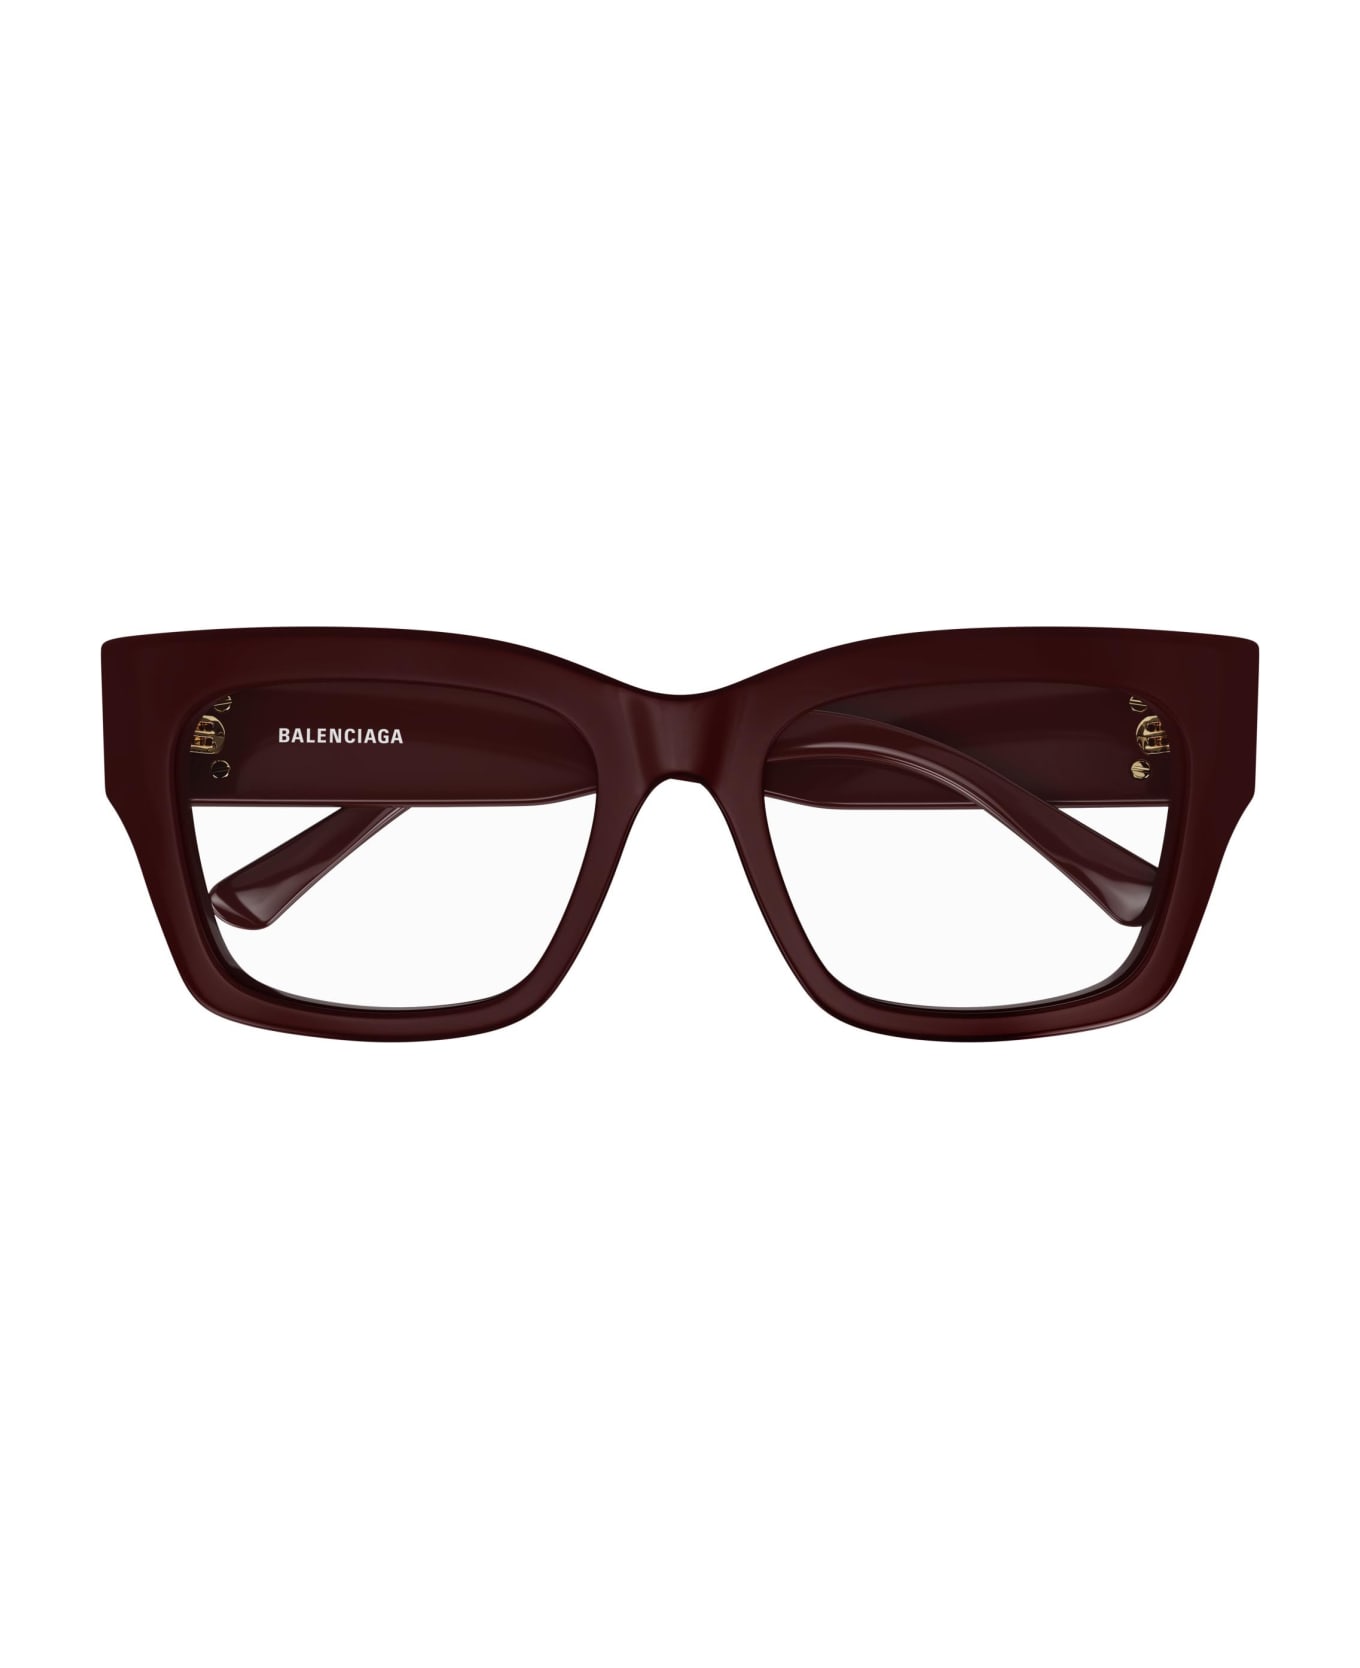 Balenciaga Eyewear Glasses - Burgundy